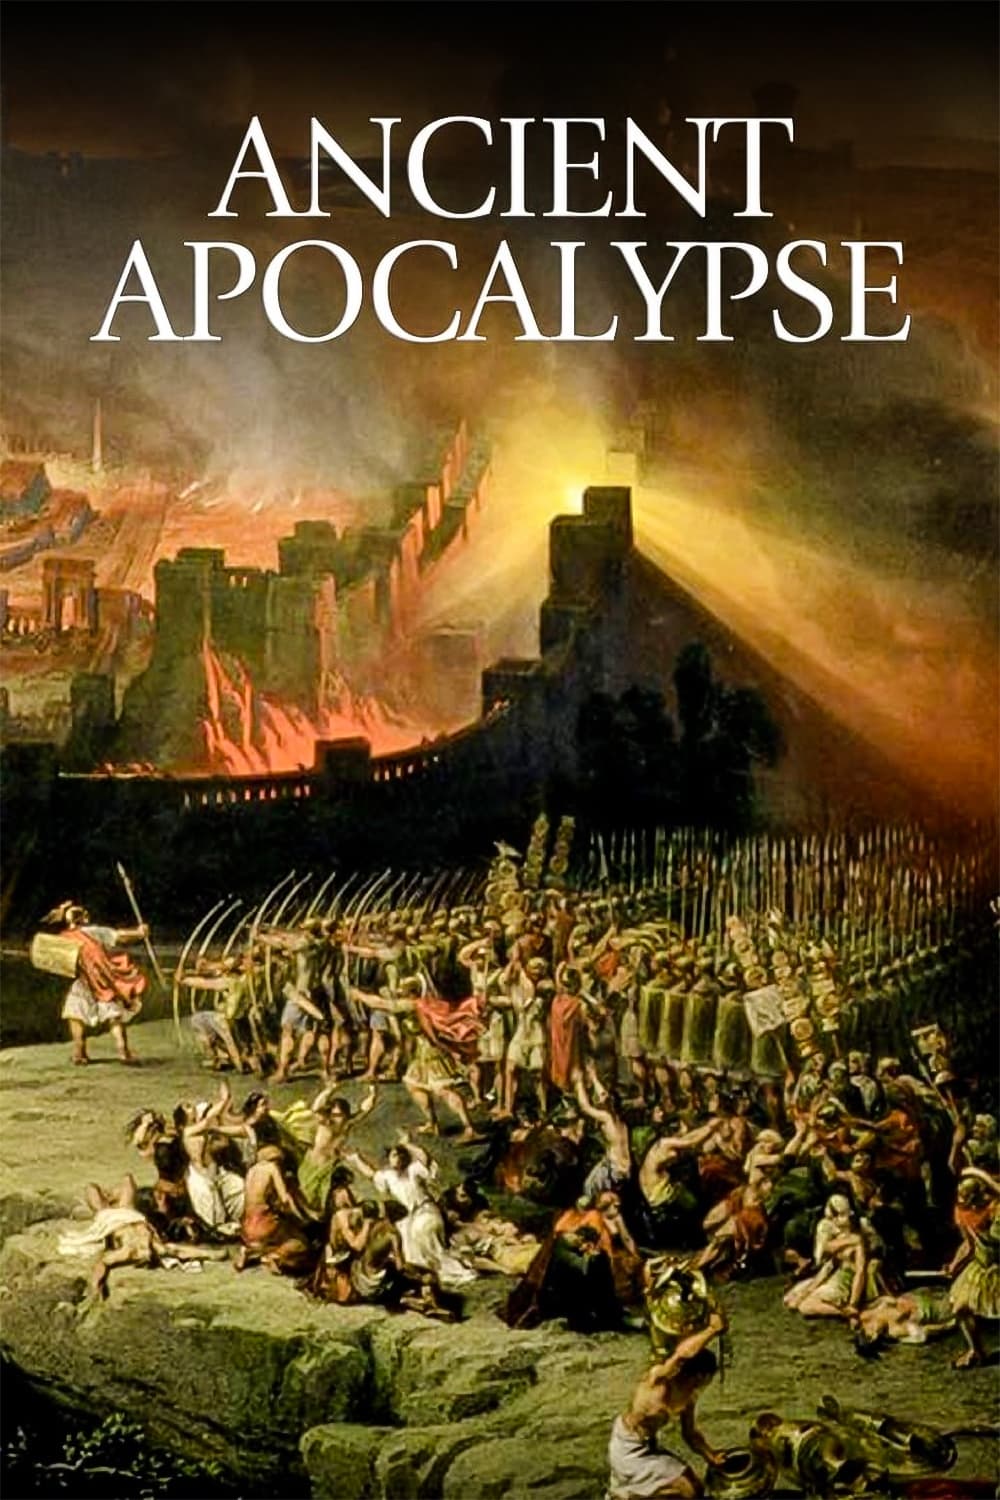 Ancient apocalypse reddit